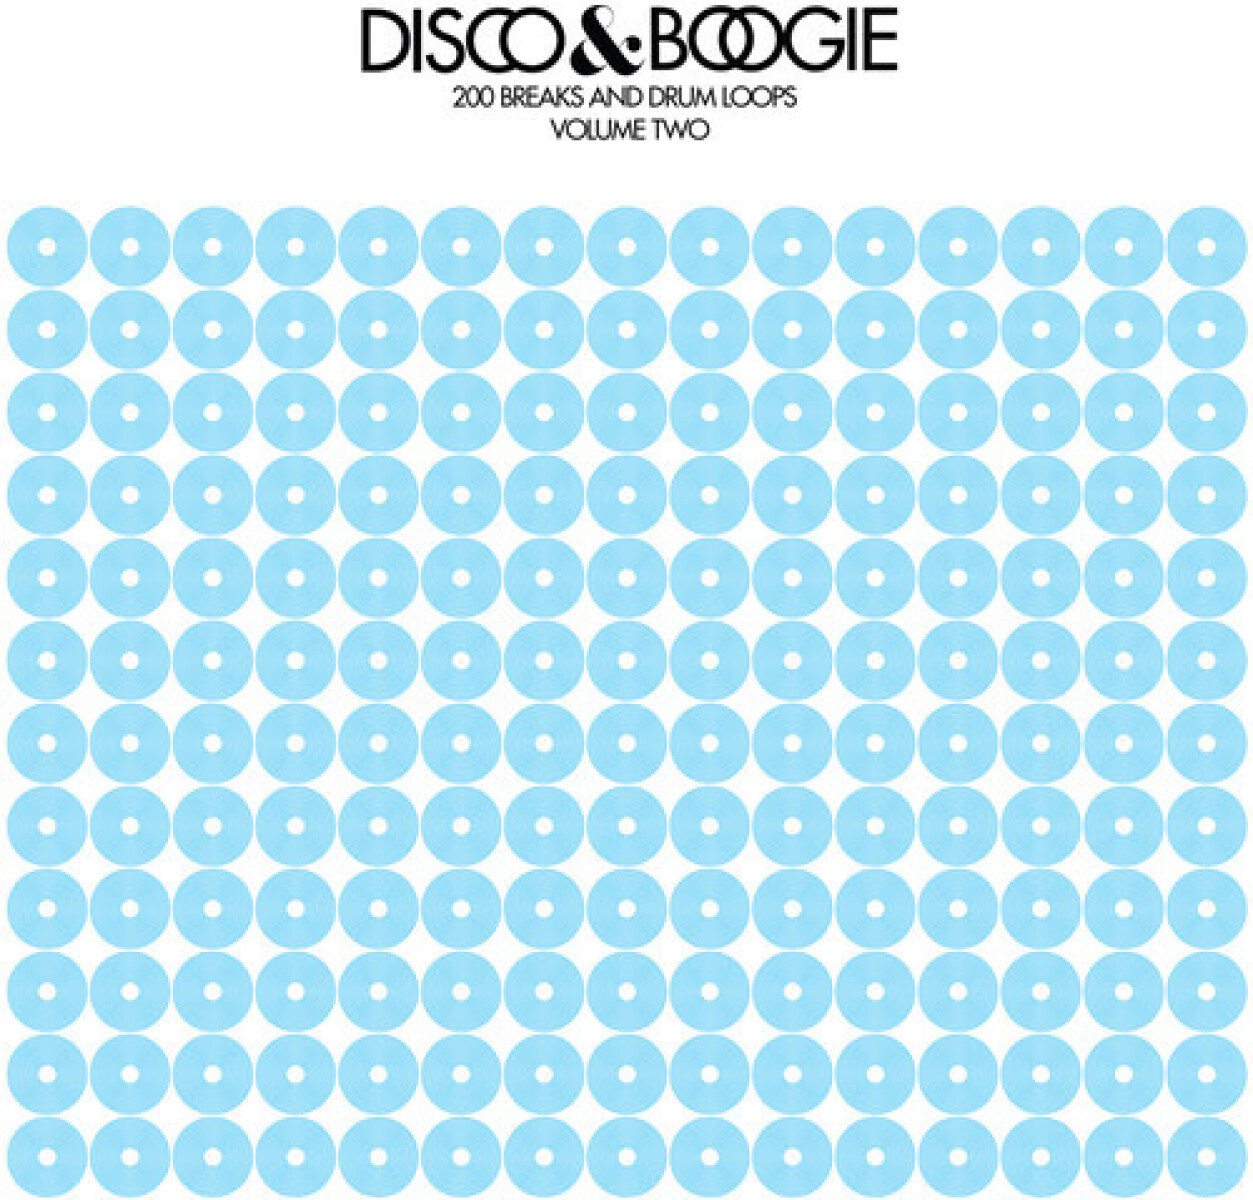 Disco & Boogie - 200 Breaks & Drum Loops 2 12"""" - Vinilo 